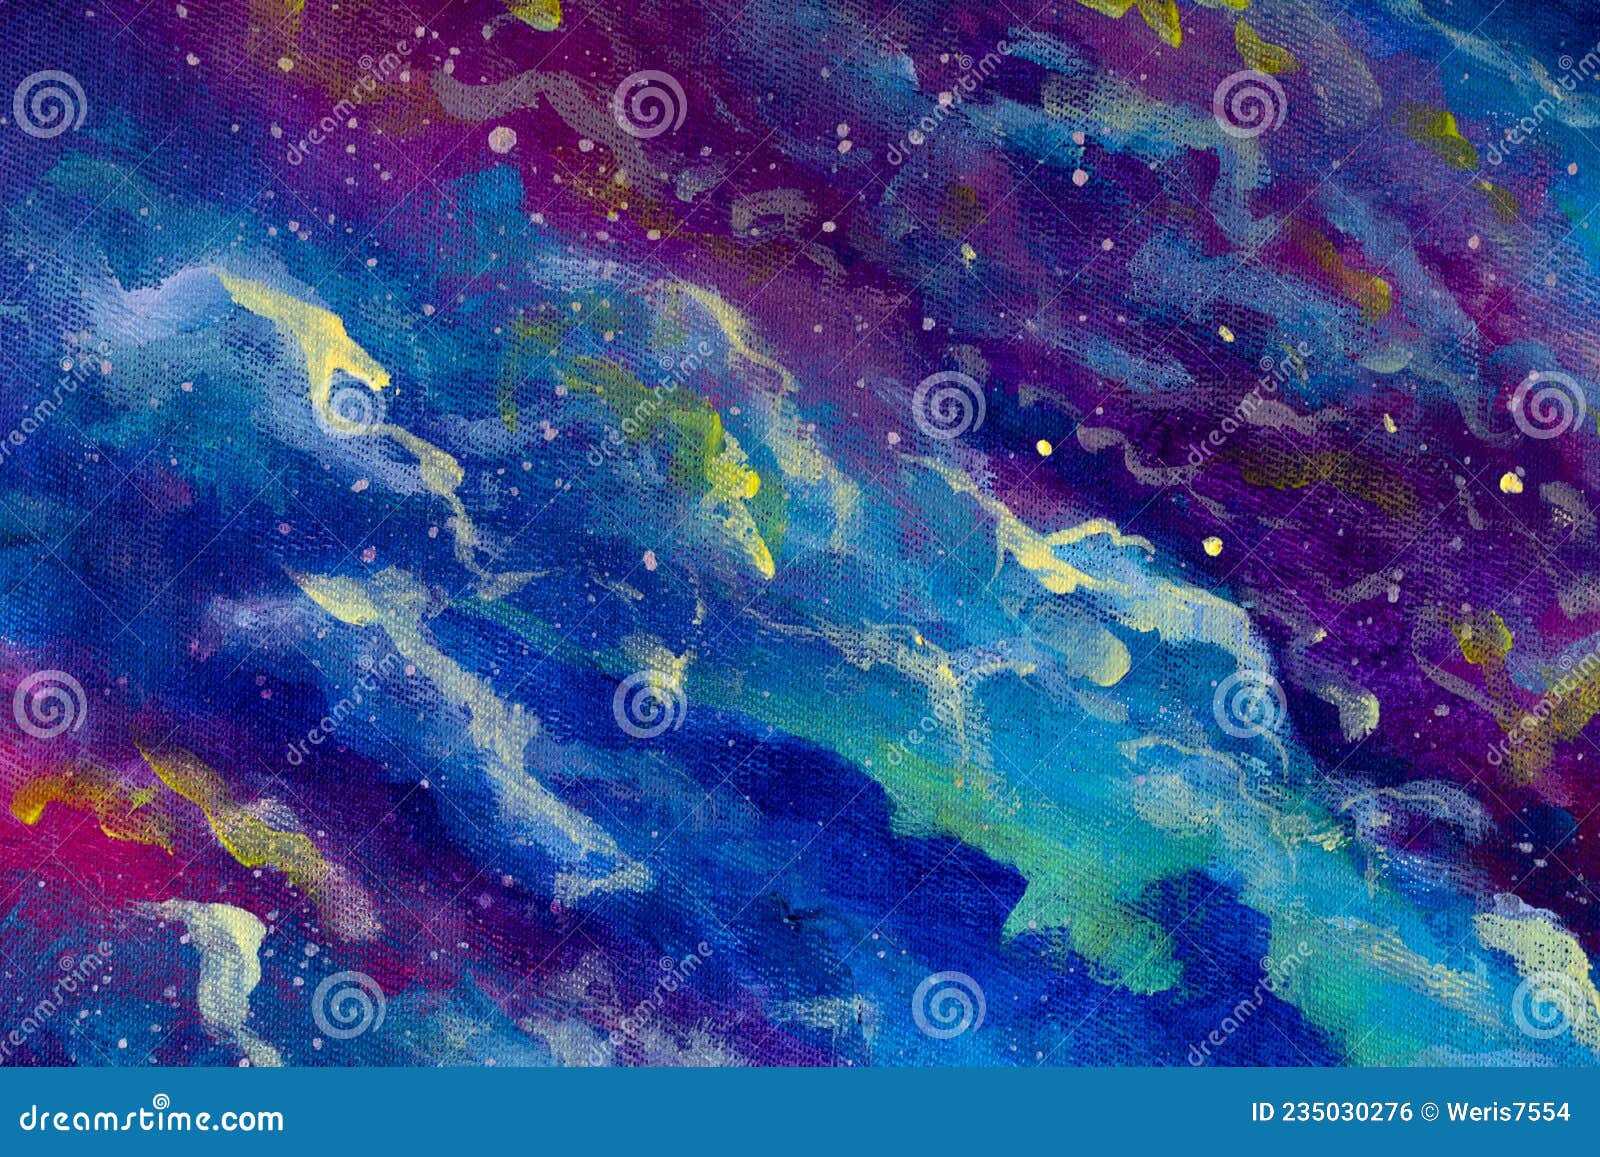 Màu sắc nền trừu tượng trong Vũ trụ với Mây xanh tím cosmic chắc chắn sẽ khiến bạn say mê. Điểm nhấn của màu sắc này sẽ mang đến cho bạn một trải nghiệm hoàn toàn mới trong thế giới nghệ thuật. Hãy cùng khám phá điều kỳ diệu này và tận hưởng những lợi ích mà nó đem lại cho chúng ta!